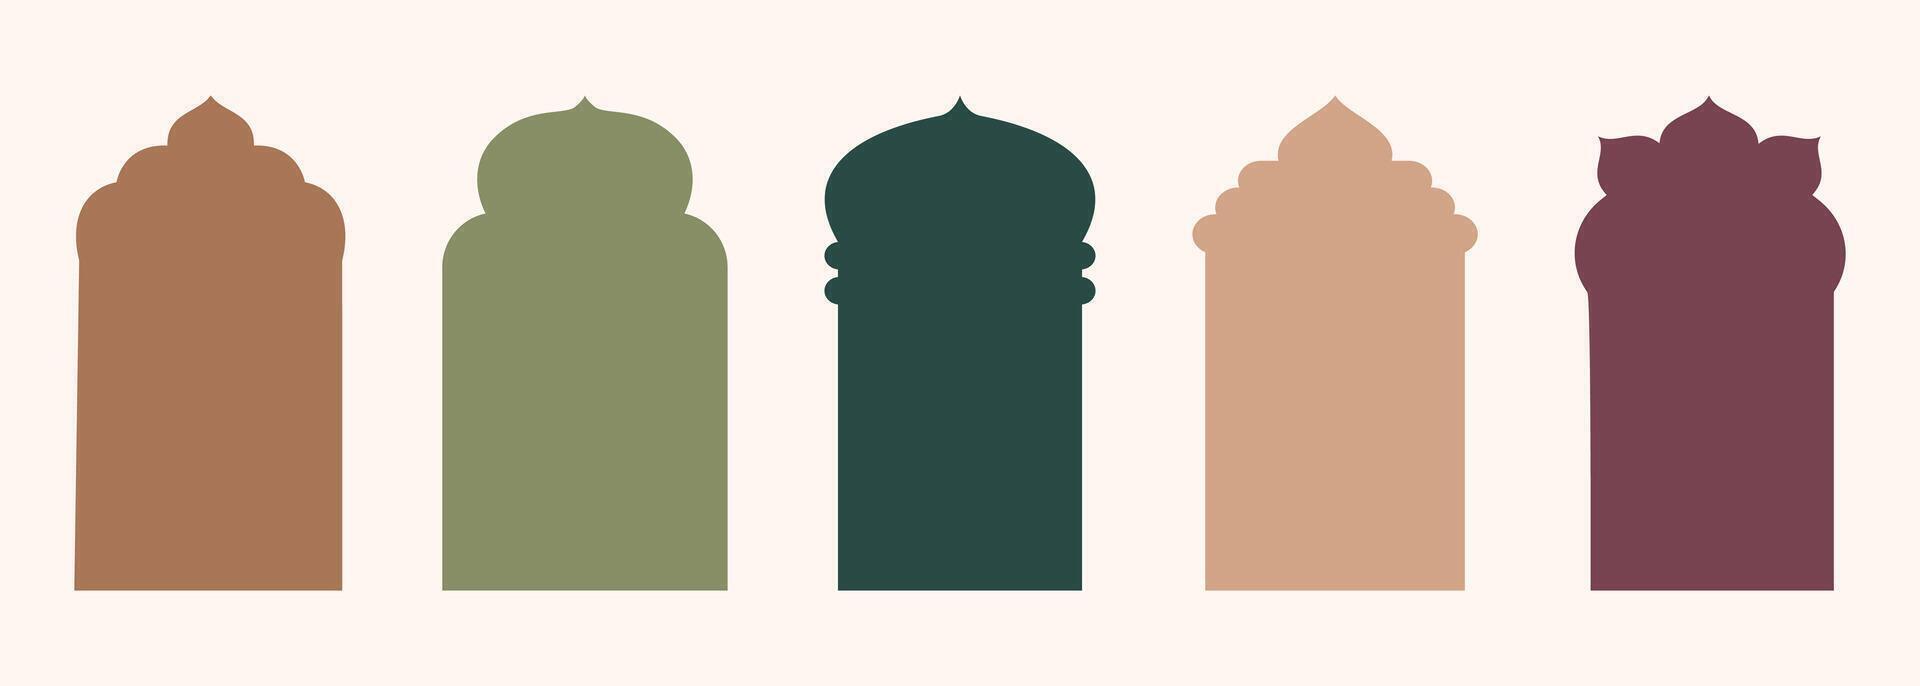 forma islámico puerta y ventana silueta Arábica arco. colección de patrones en oriental estilo. marcos en Arábica musulmán diseño para Ramadán kareem vector mezquita portón forma aislado en blanco.